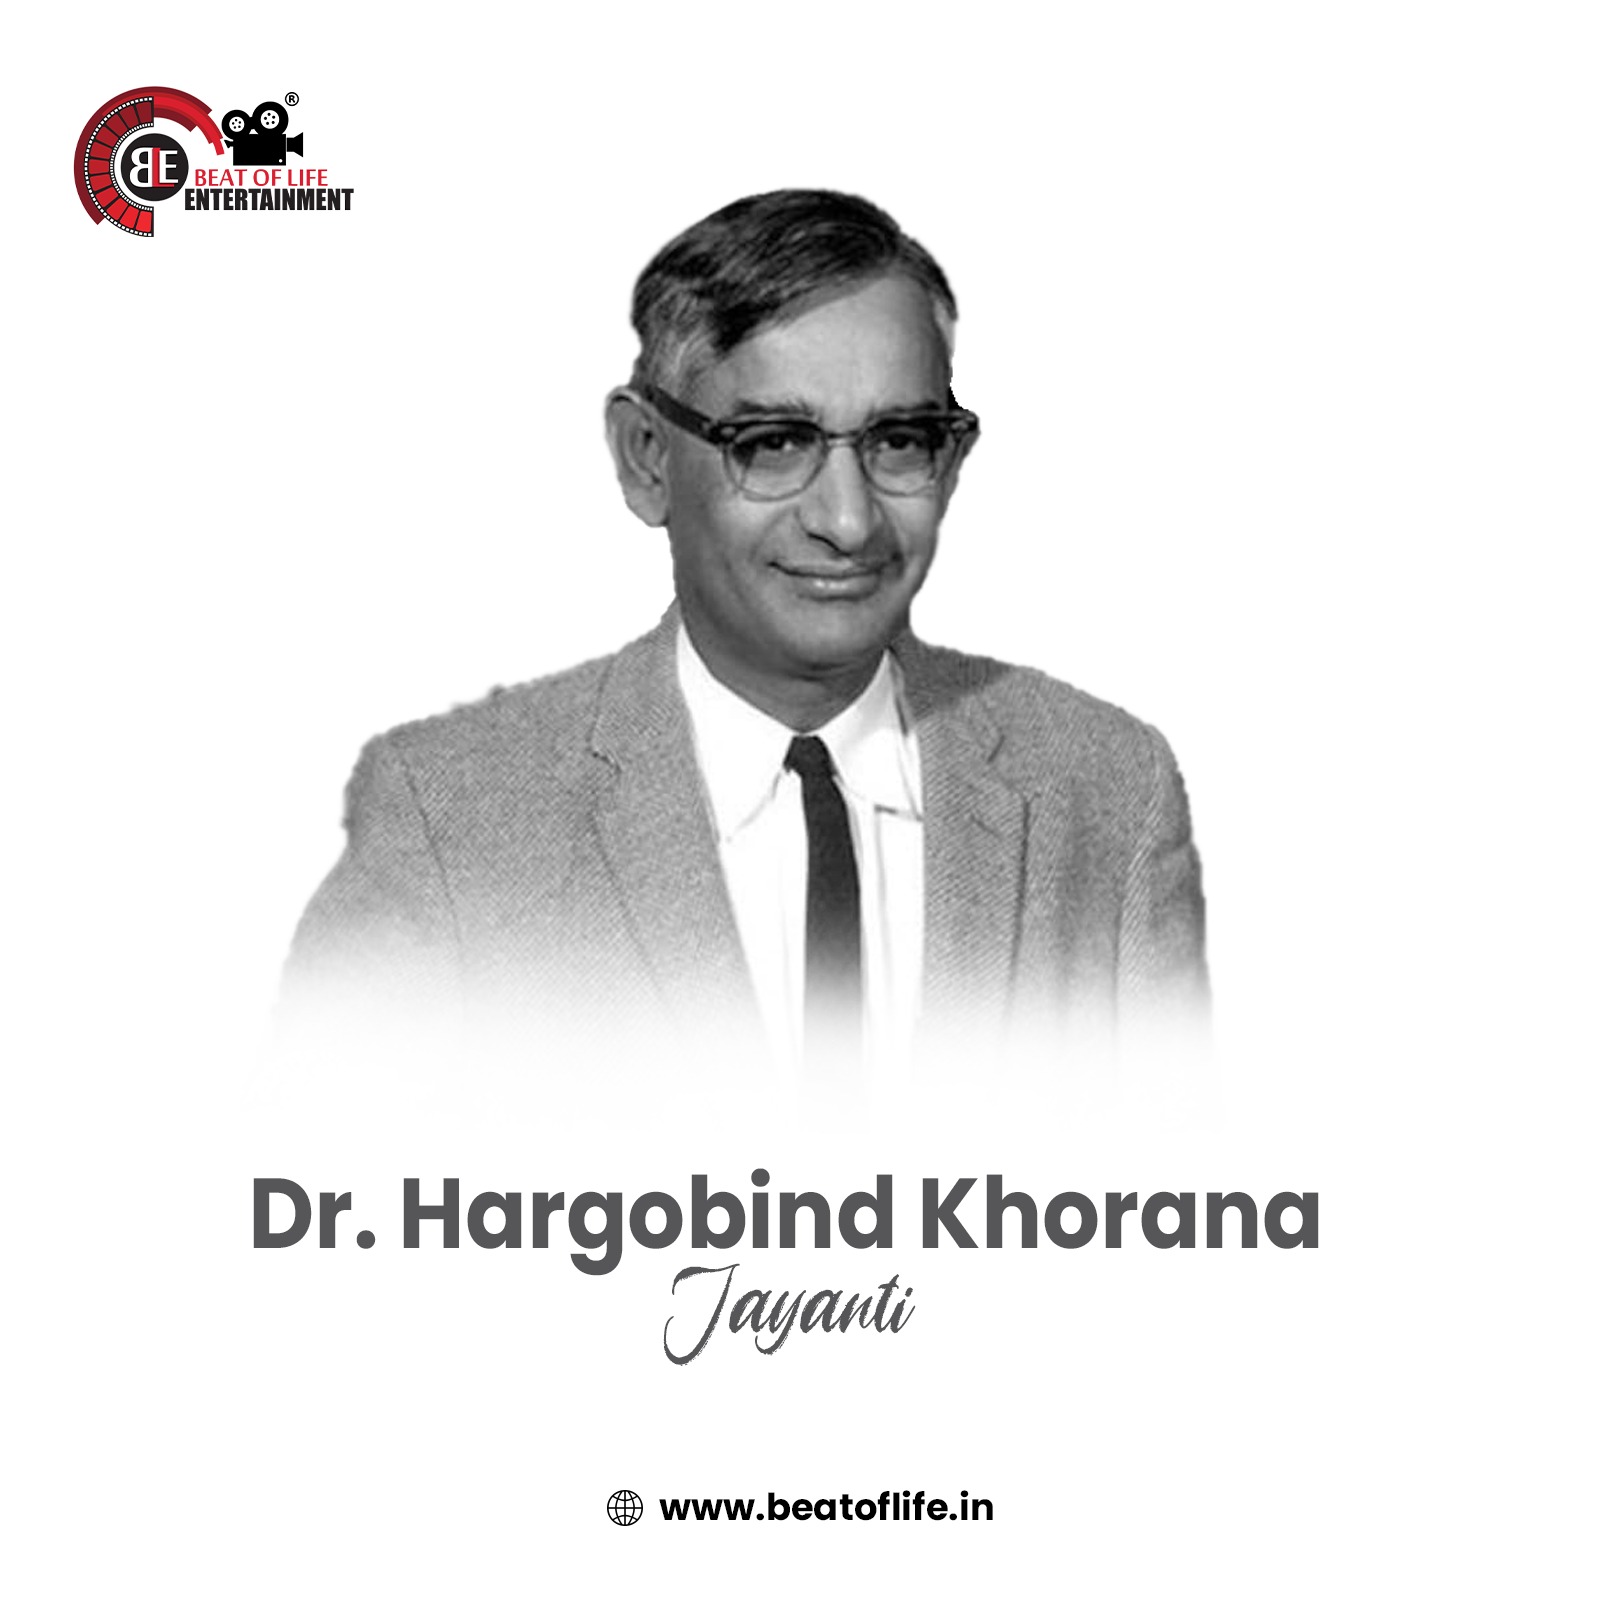 Dr. Har Gobind Khorana